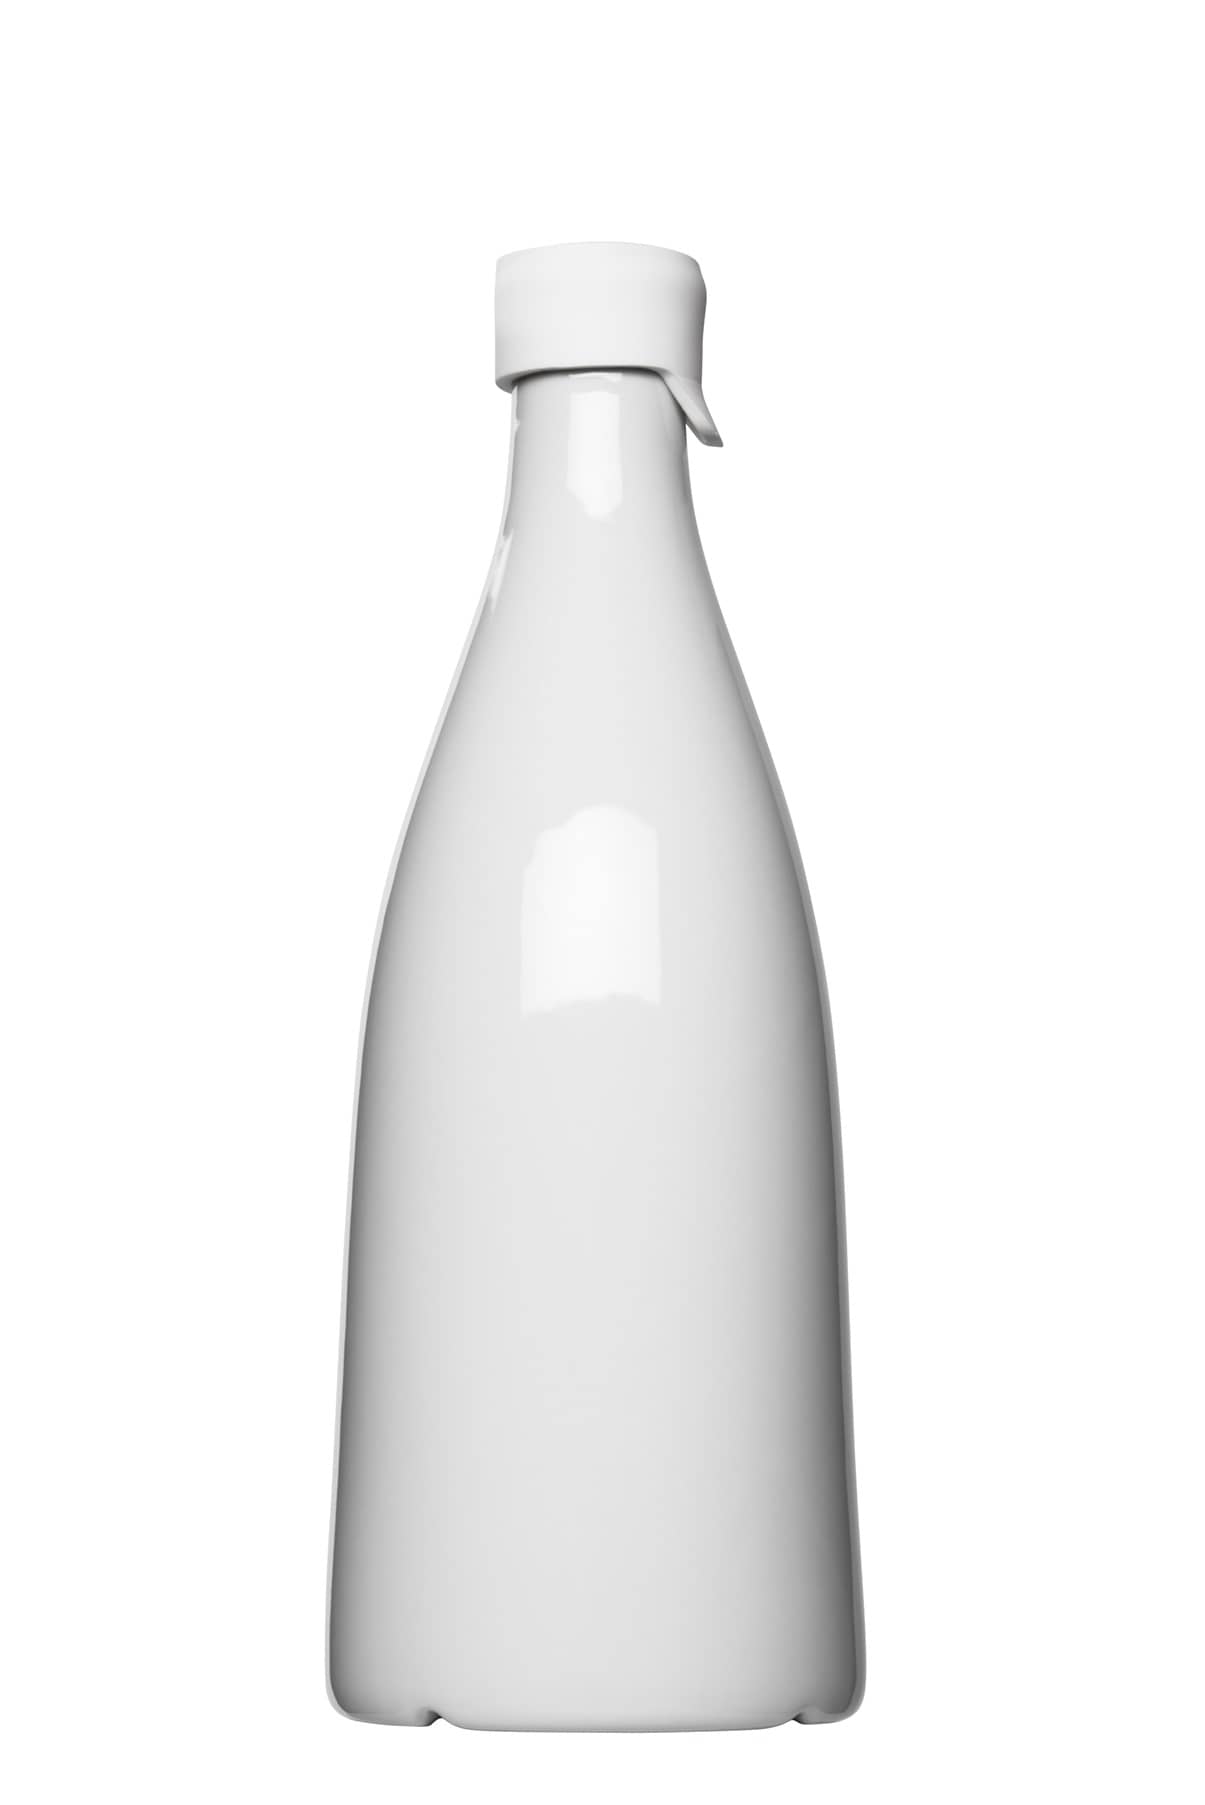 Flasche zum bedrucken mit einem Logo oder einer Grafik als Werbegeschenk, Werbeartikel oder Werbemittel